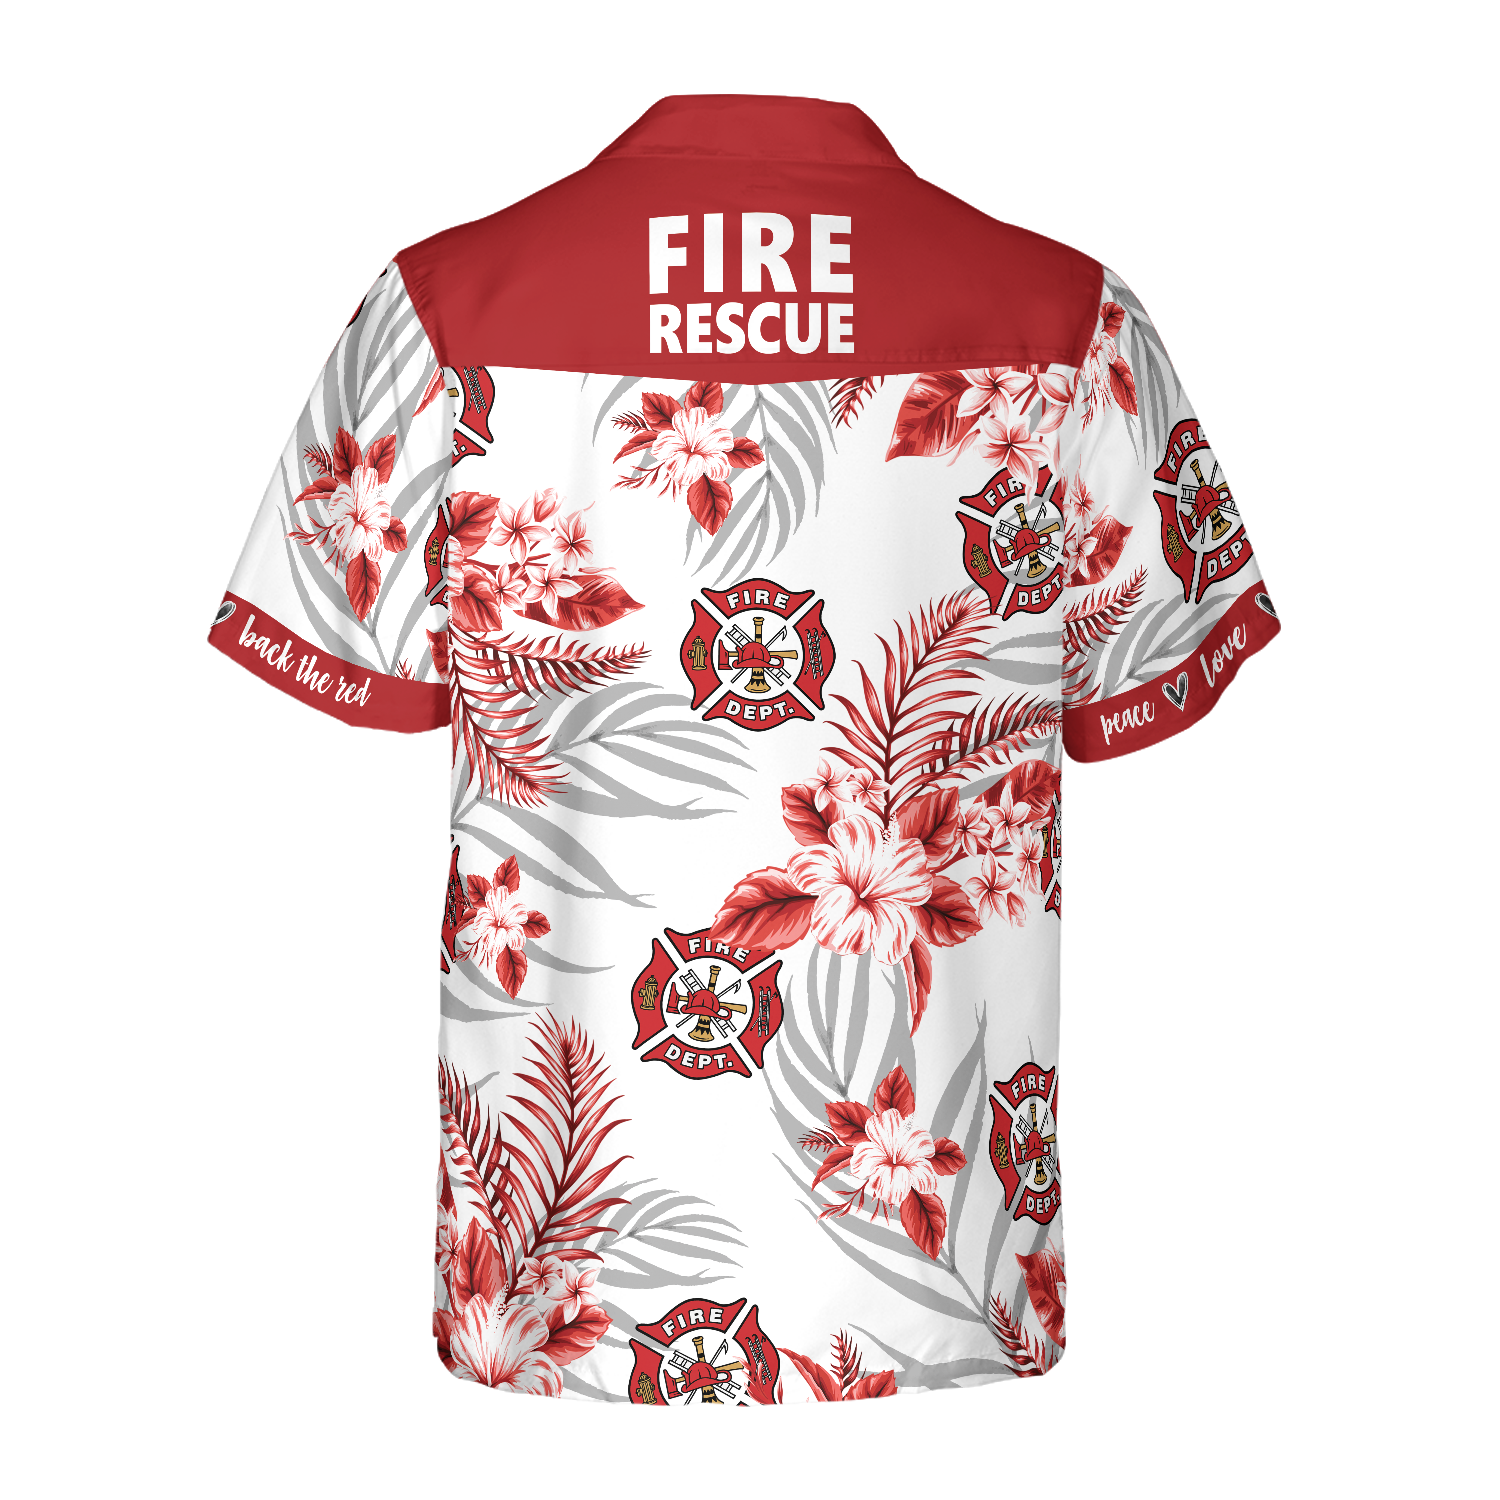 Firefighter Fire Rescue Hawaiian Shirt/ Gift for Firefighter